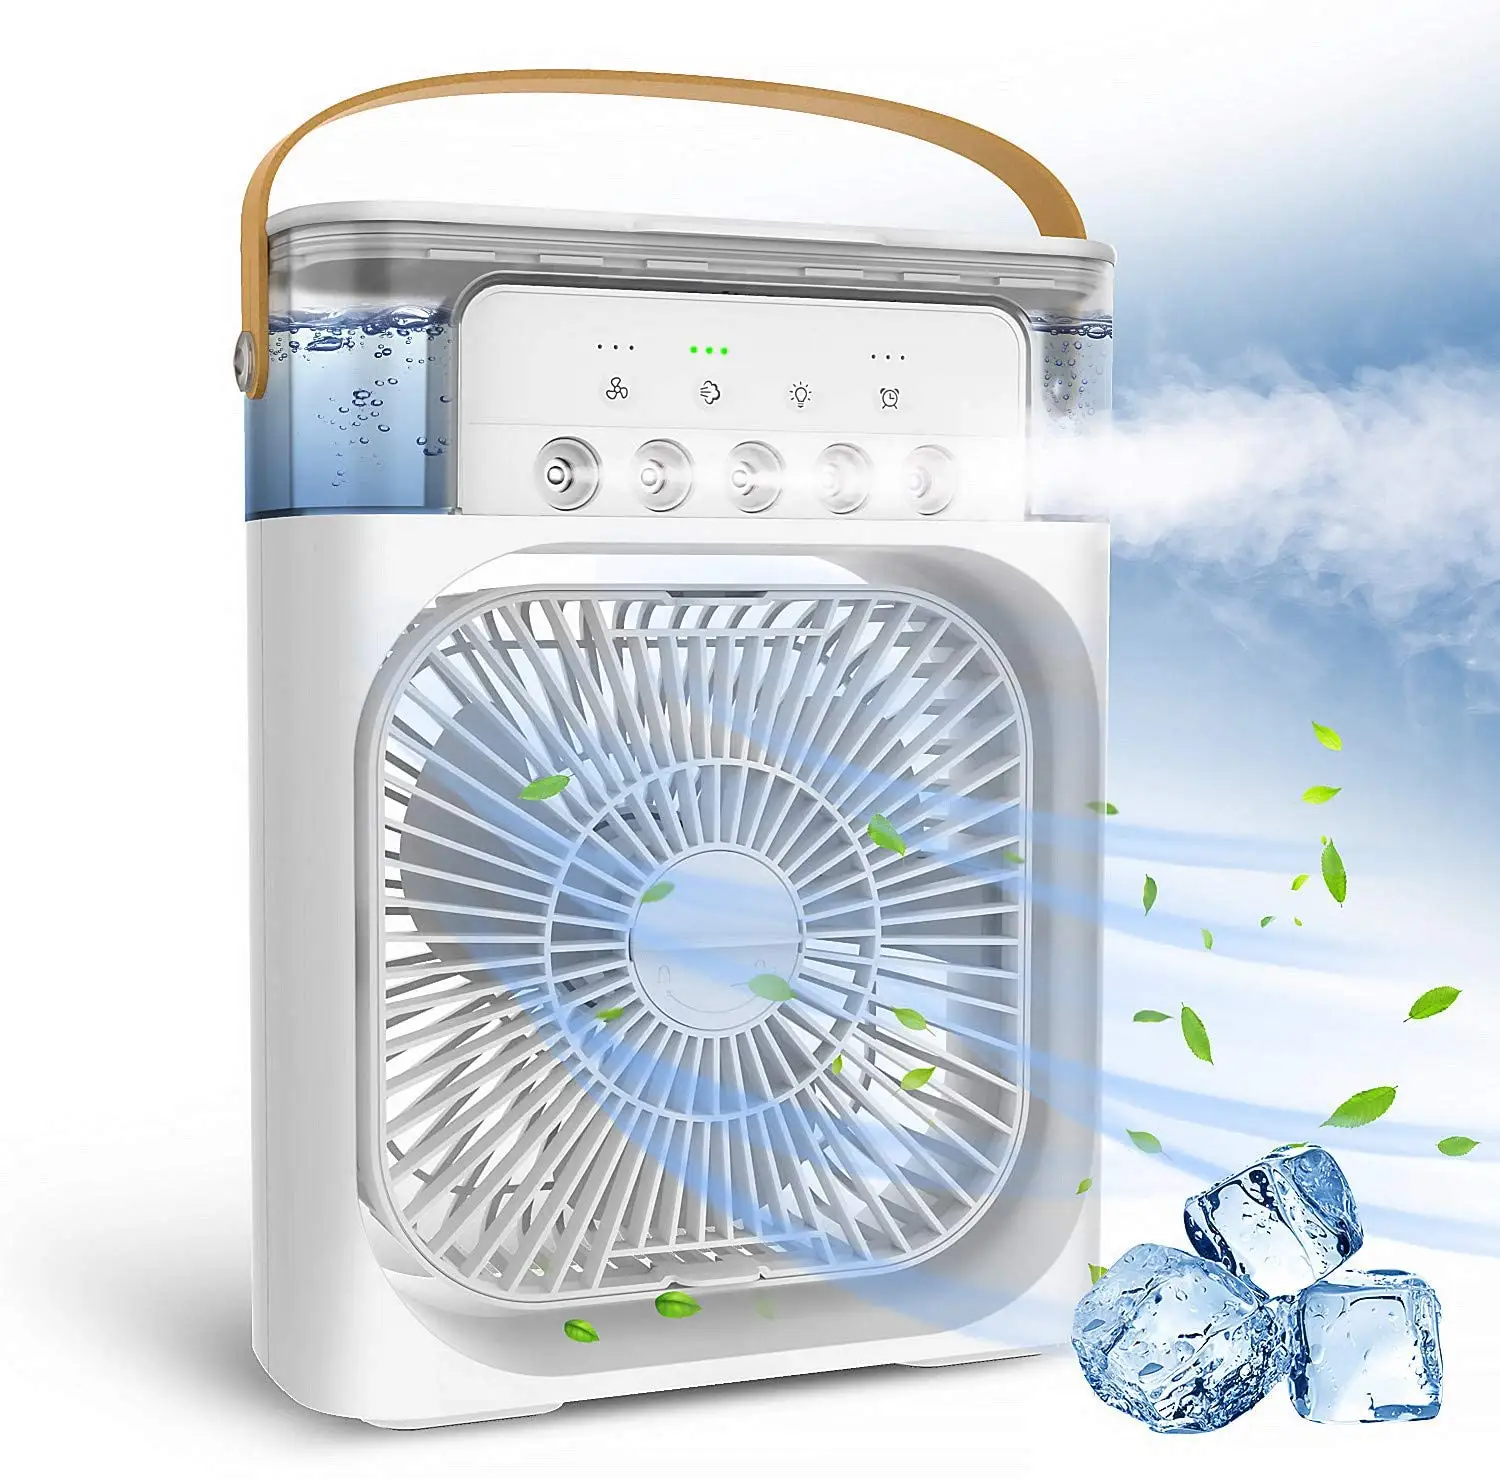 Вентилятор воздушного охлаждения постоянного тока, вентиляционный вентилятор, 110 мм, электрические вентиляторы с воздушным охлаждением